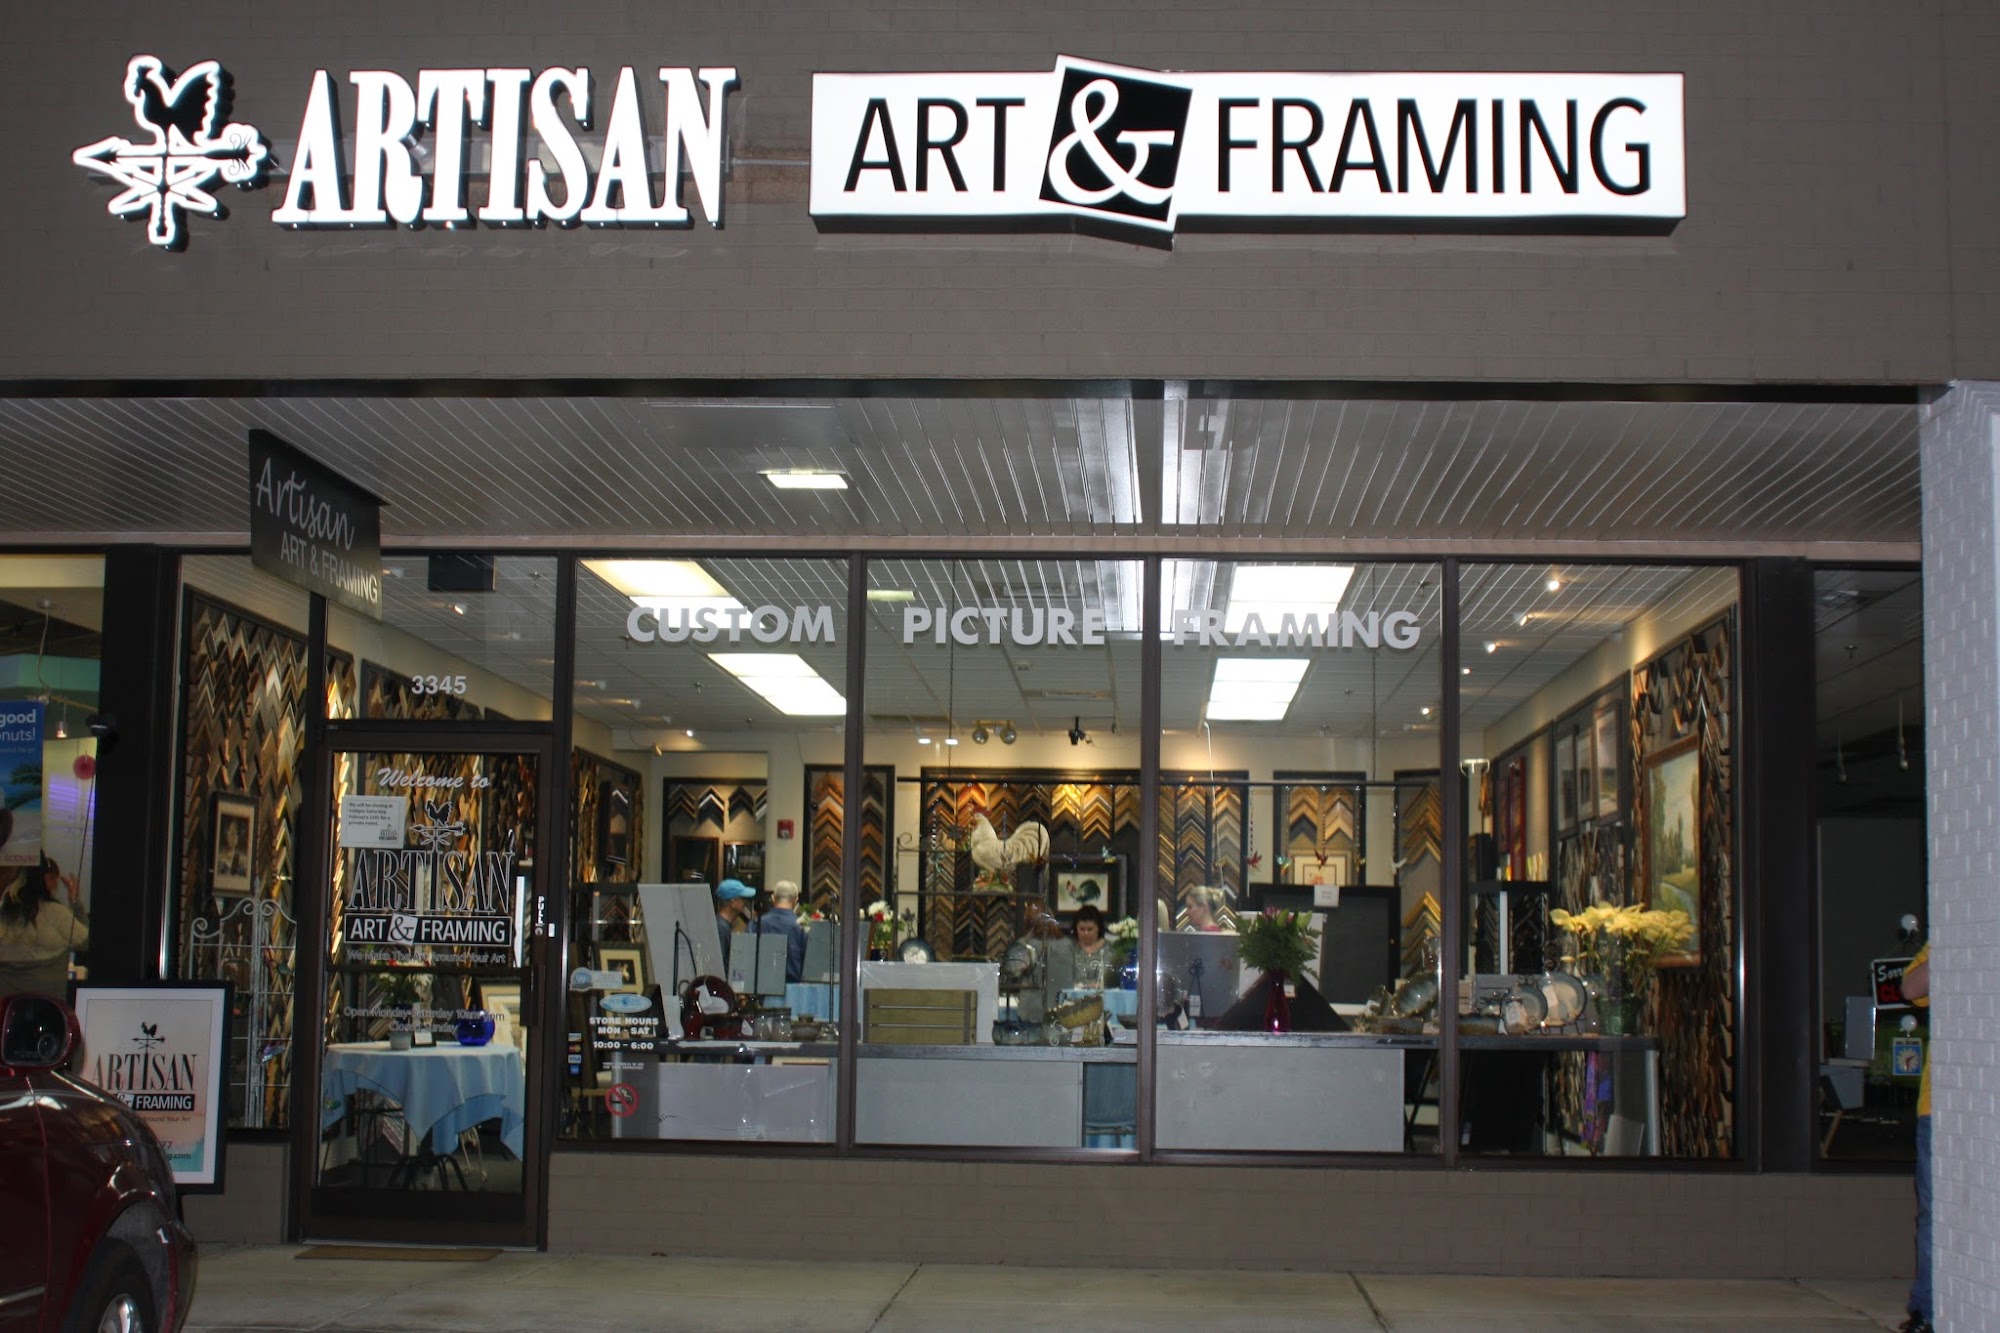 Artisan Art and Framing